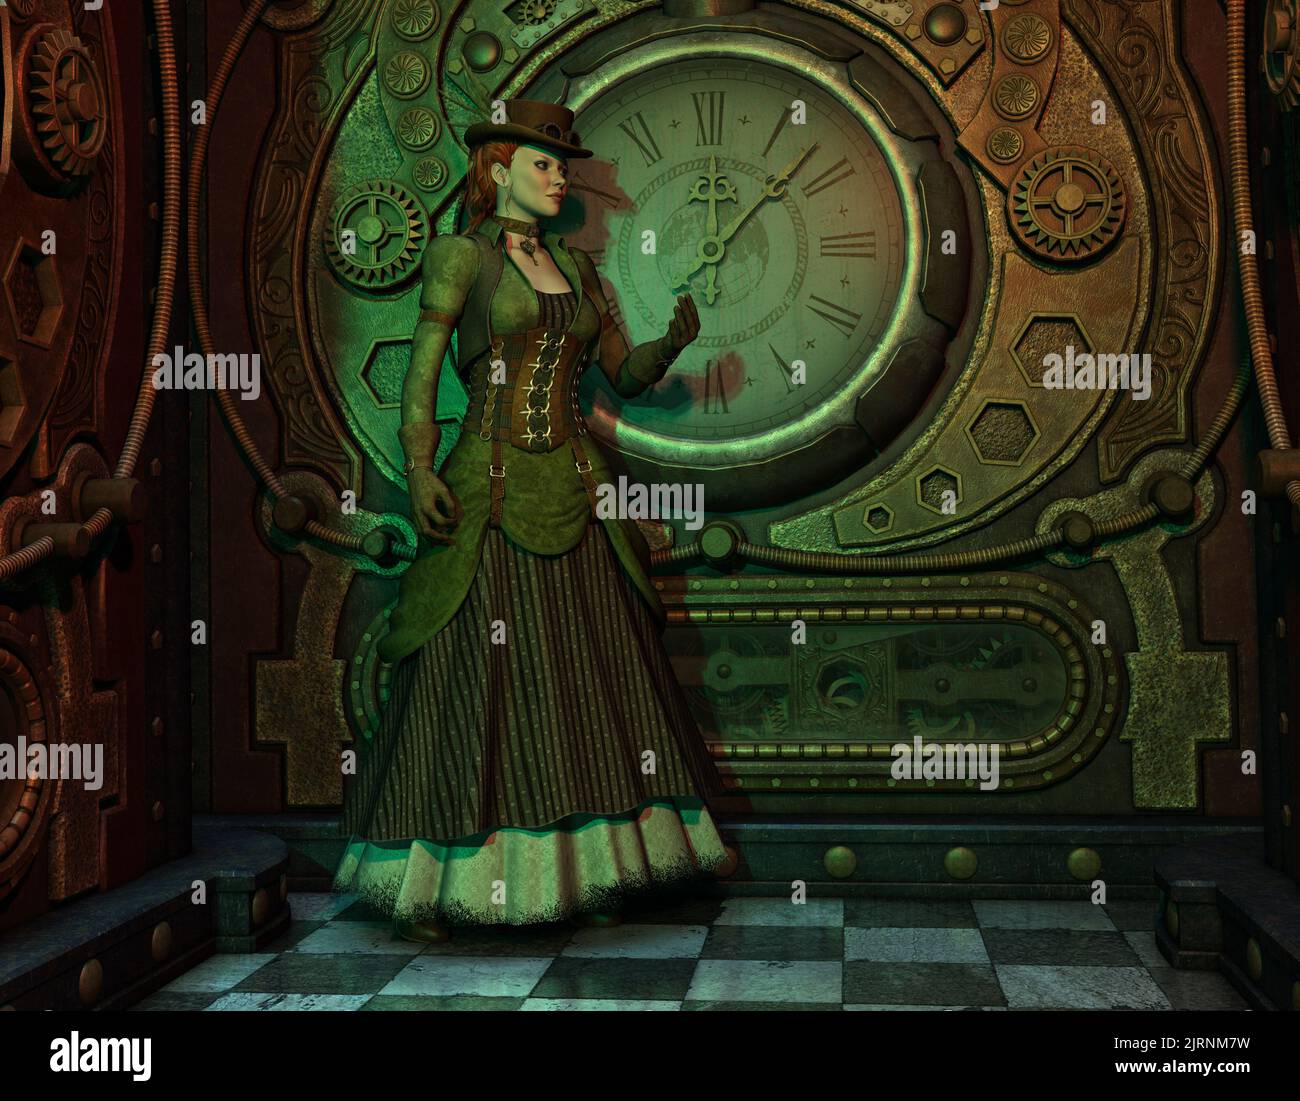 Steampunk Hannah - Une femme habillée dans le style gothique Steampunk avec un fond d'horloge. Banque D'Images